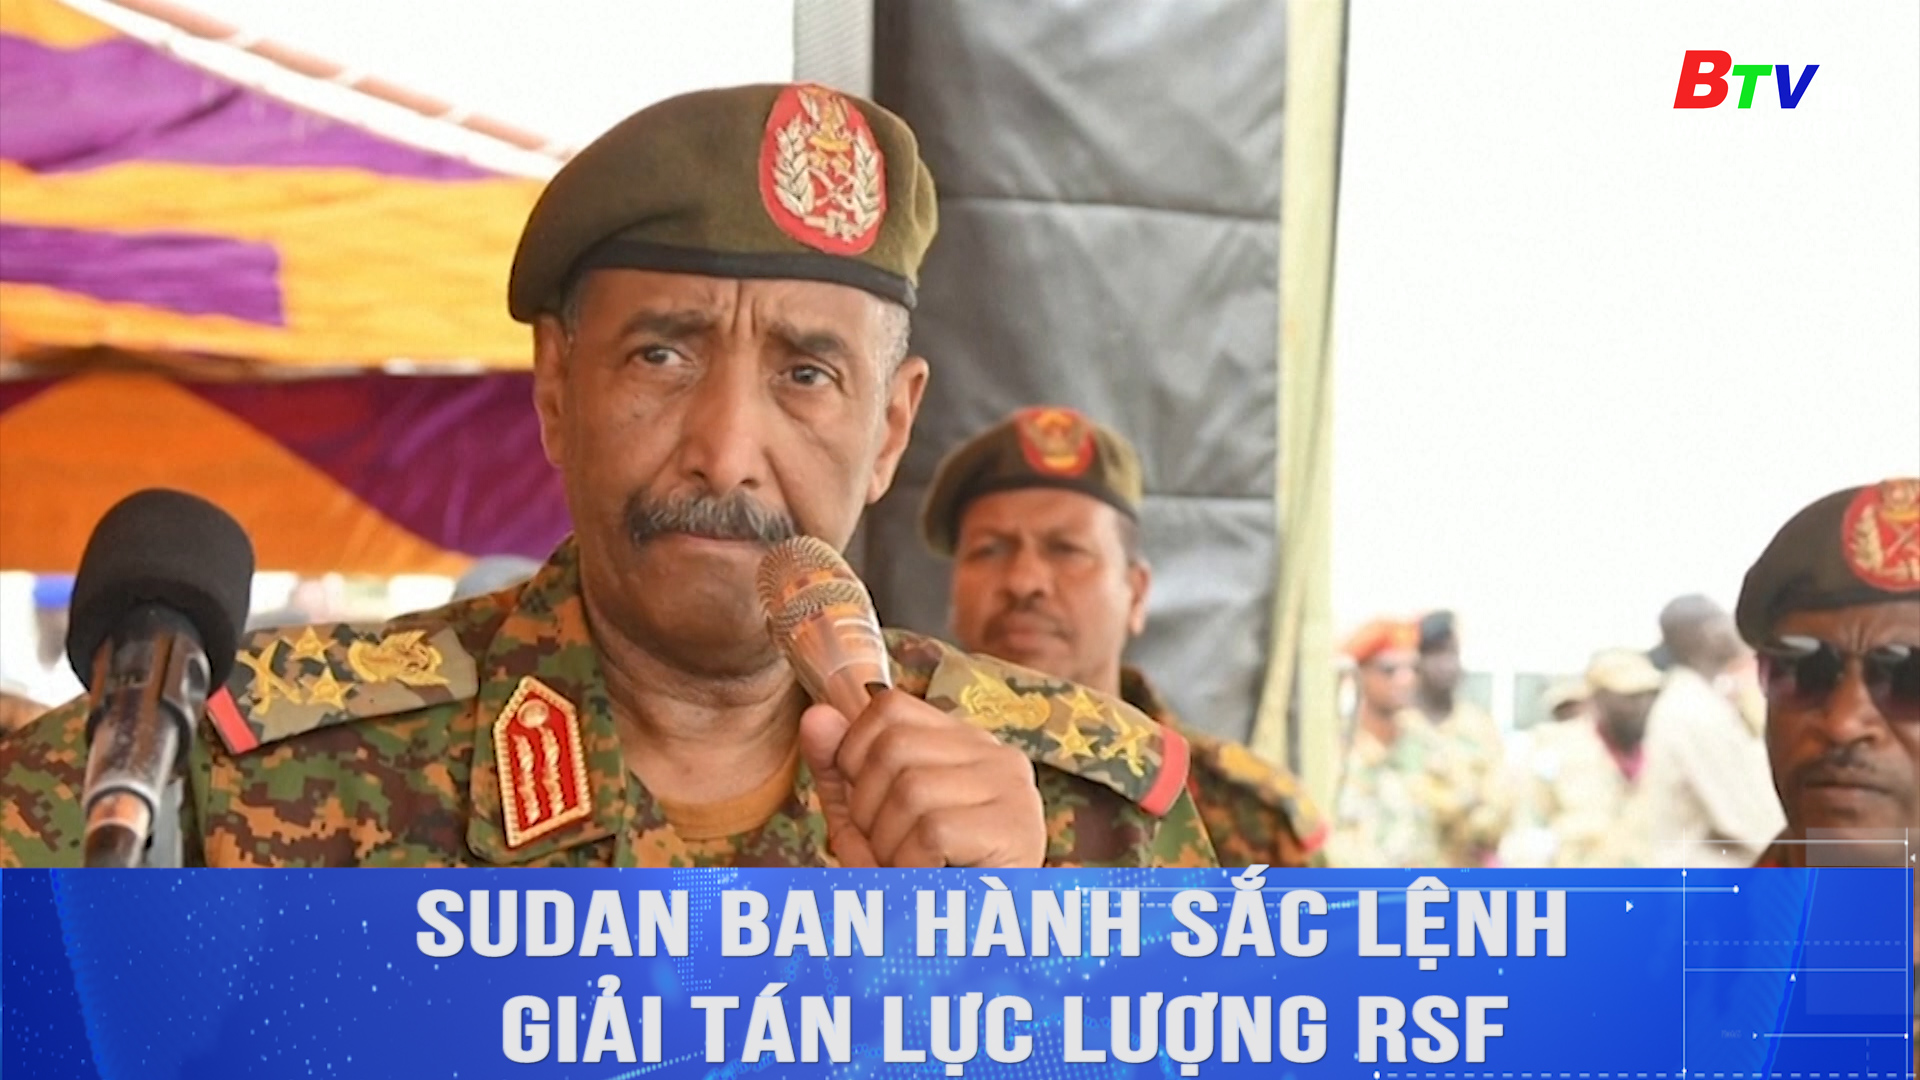 Sudan ban hành sắc lệnh giải tán lực lượng RSF